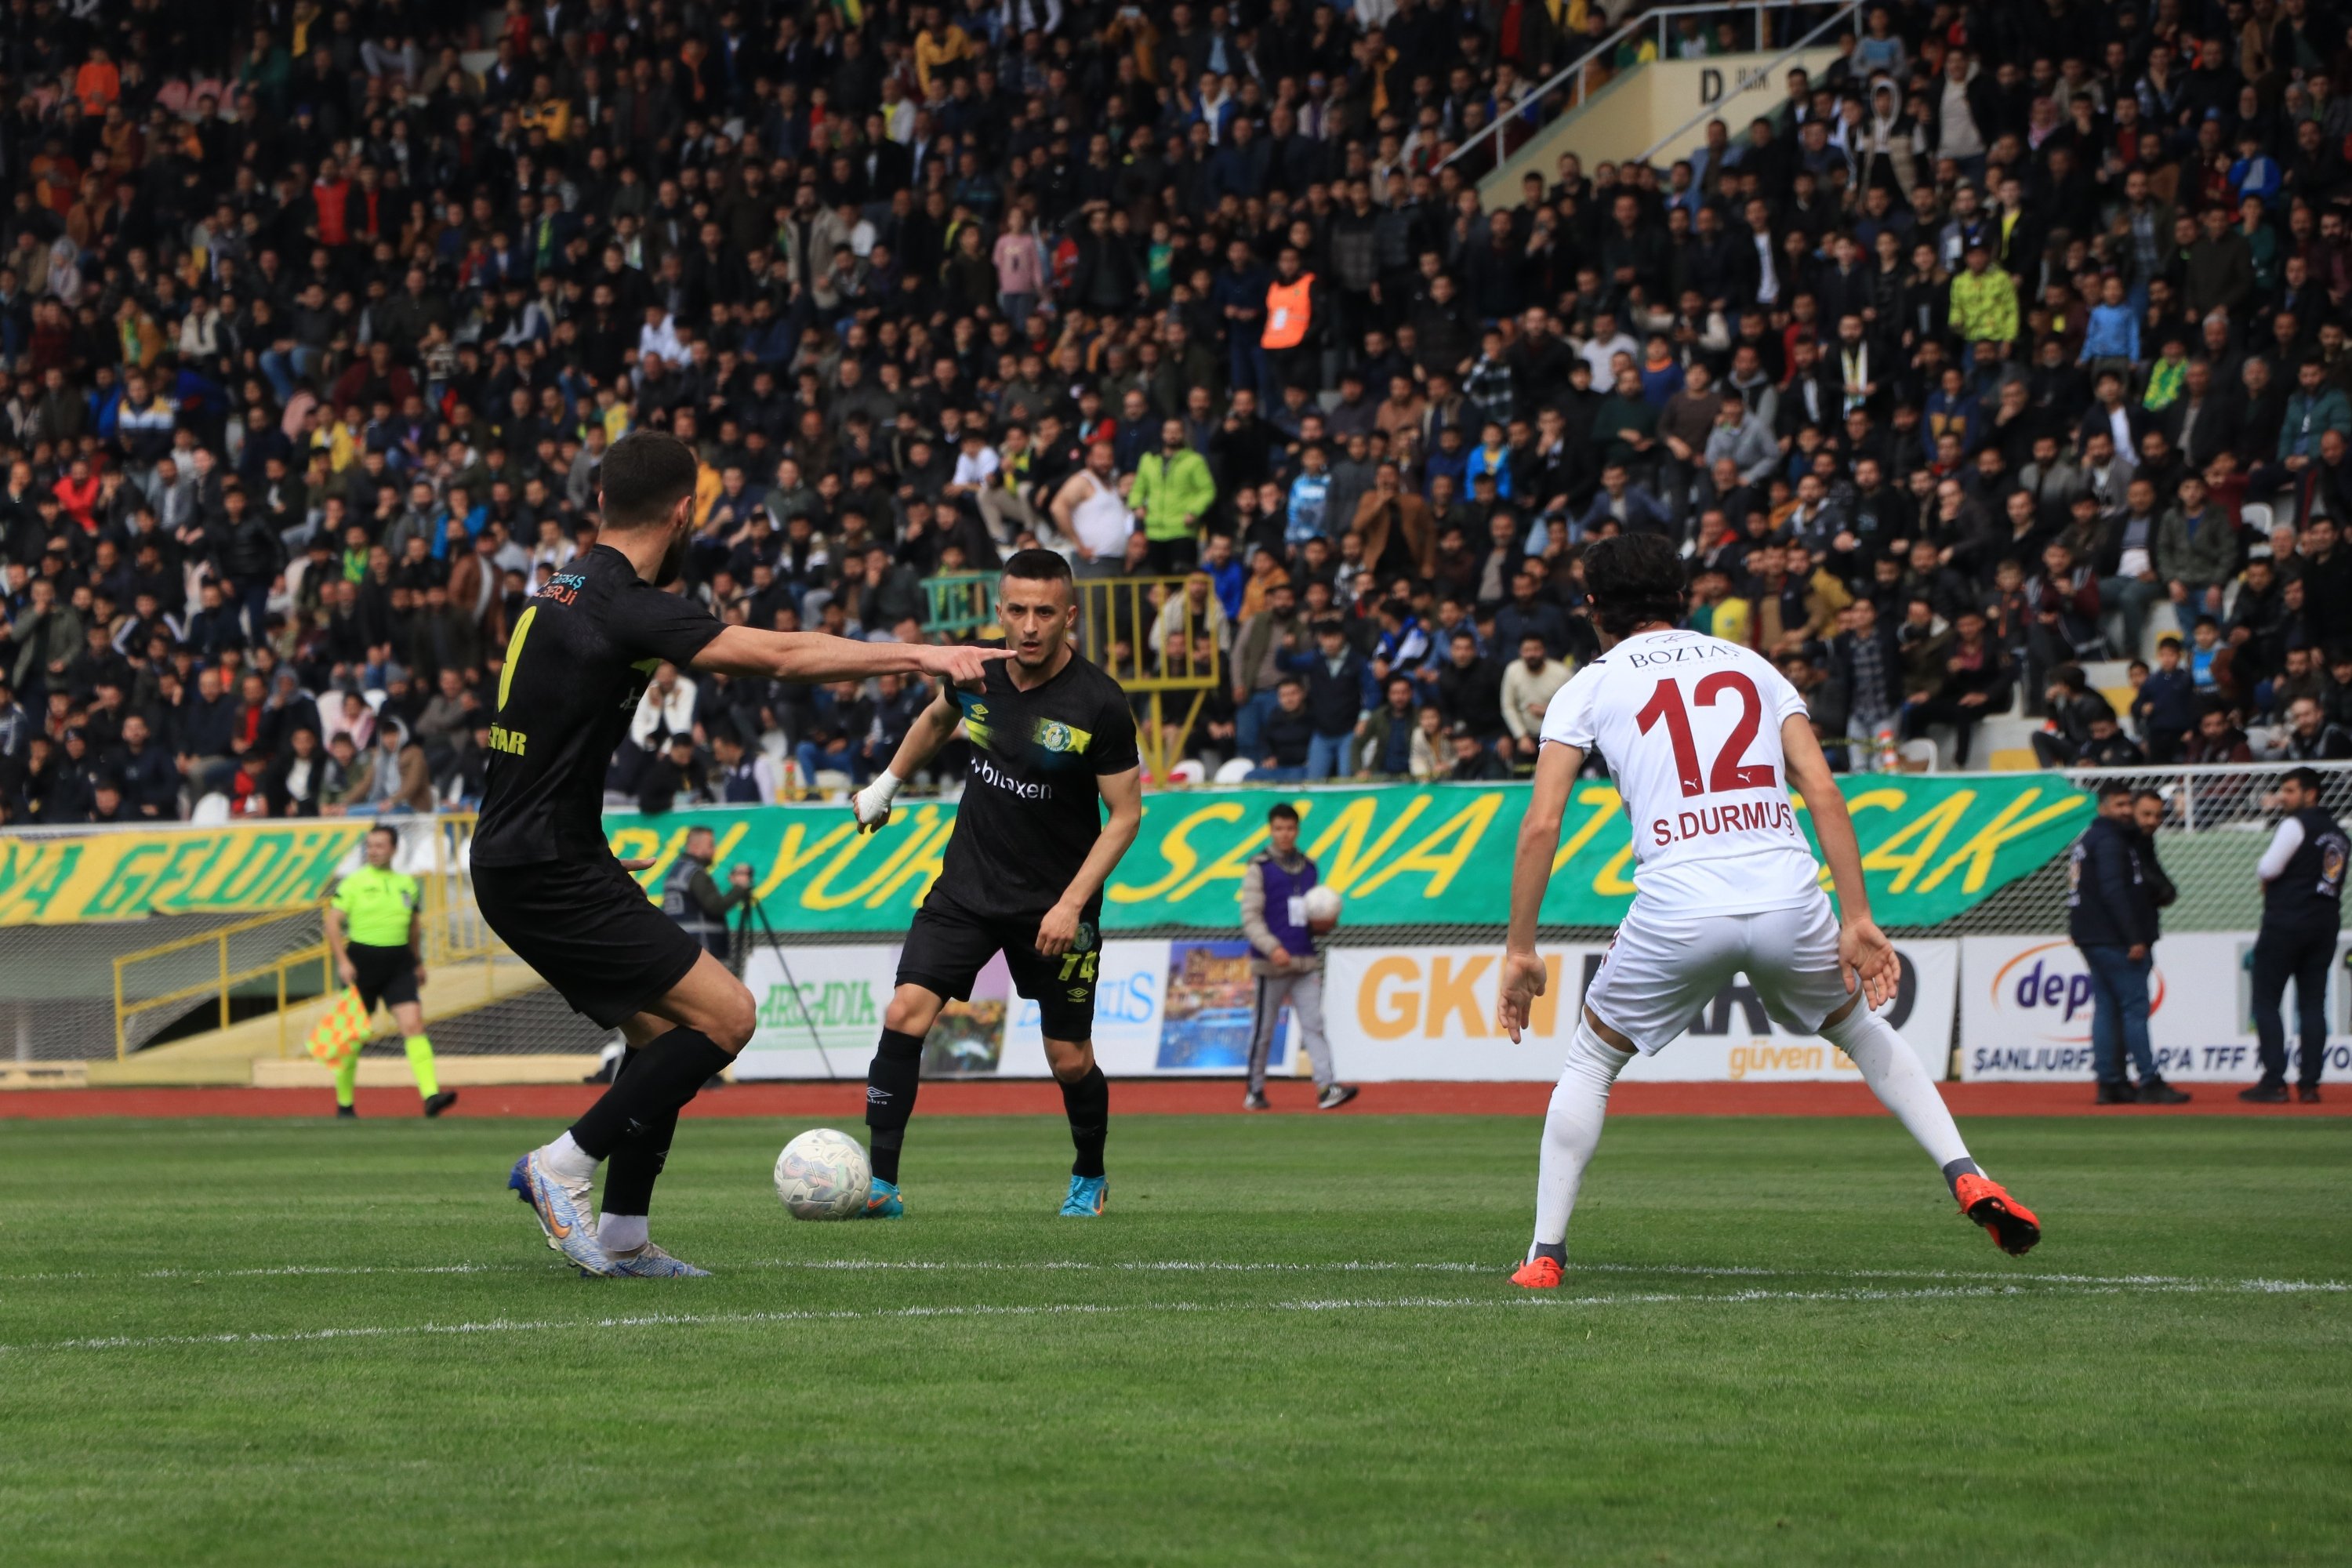 İnegölspor paramparça oldu! 8-0 - Bursasporx.com | Bursa'nın Sporu